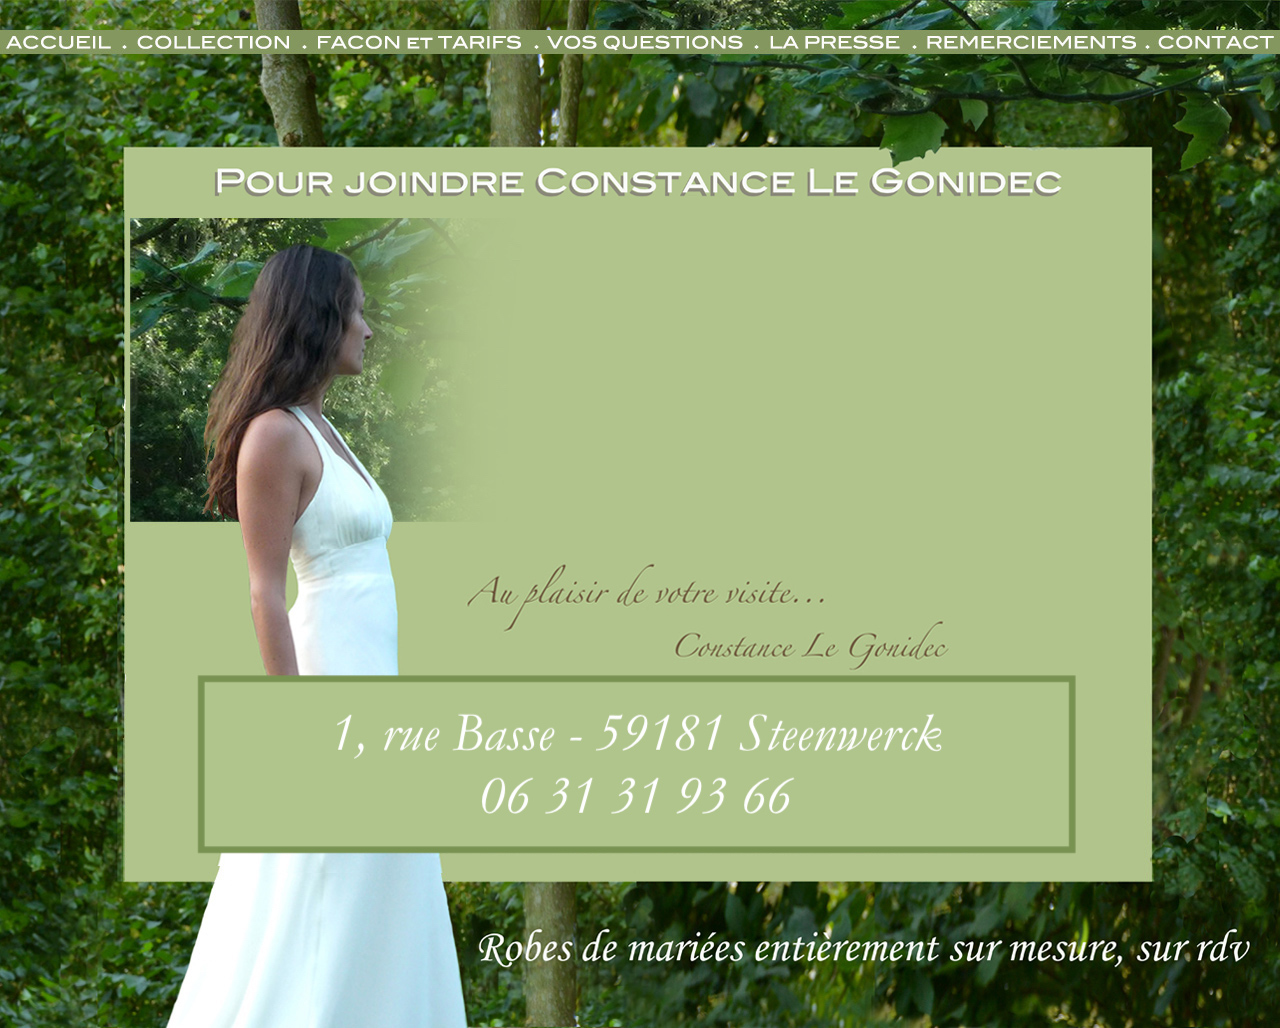 Contacter Constance Le Gonidec